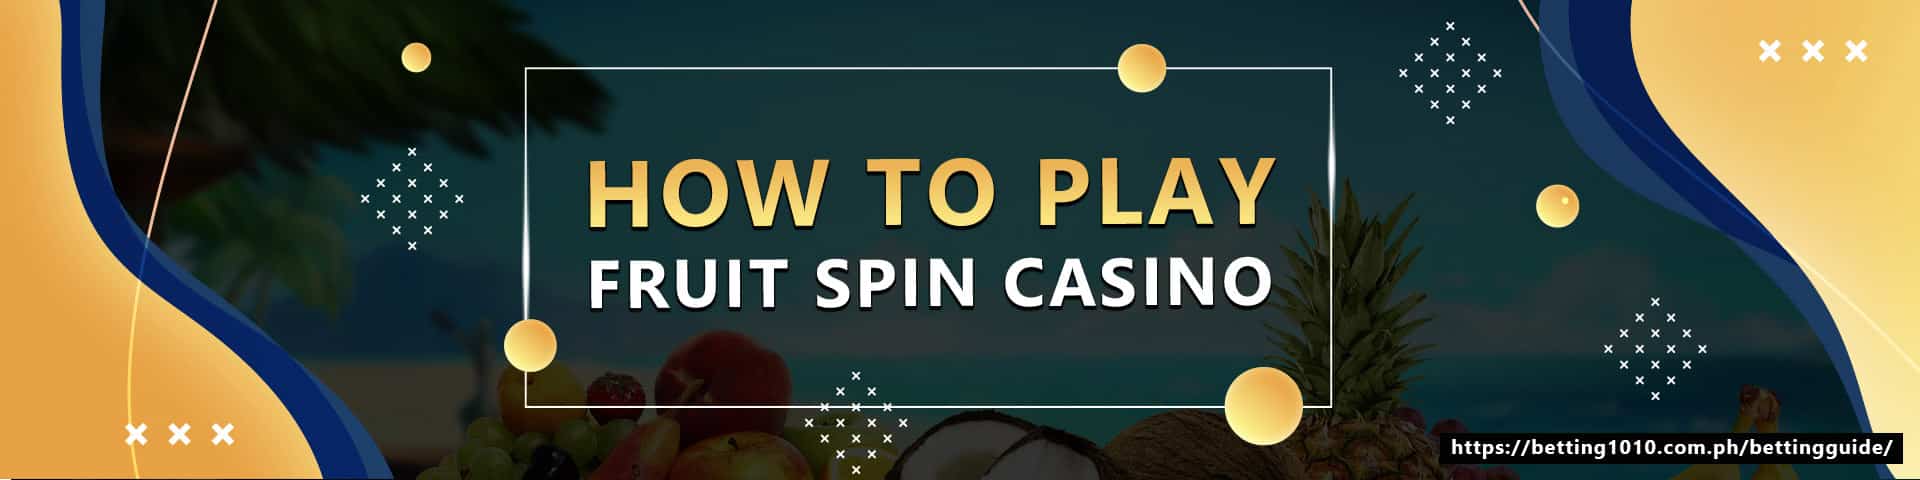 How to plau futit spin casino